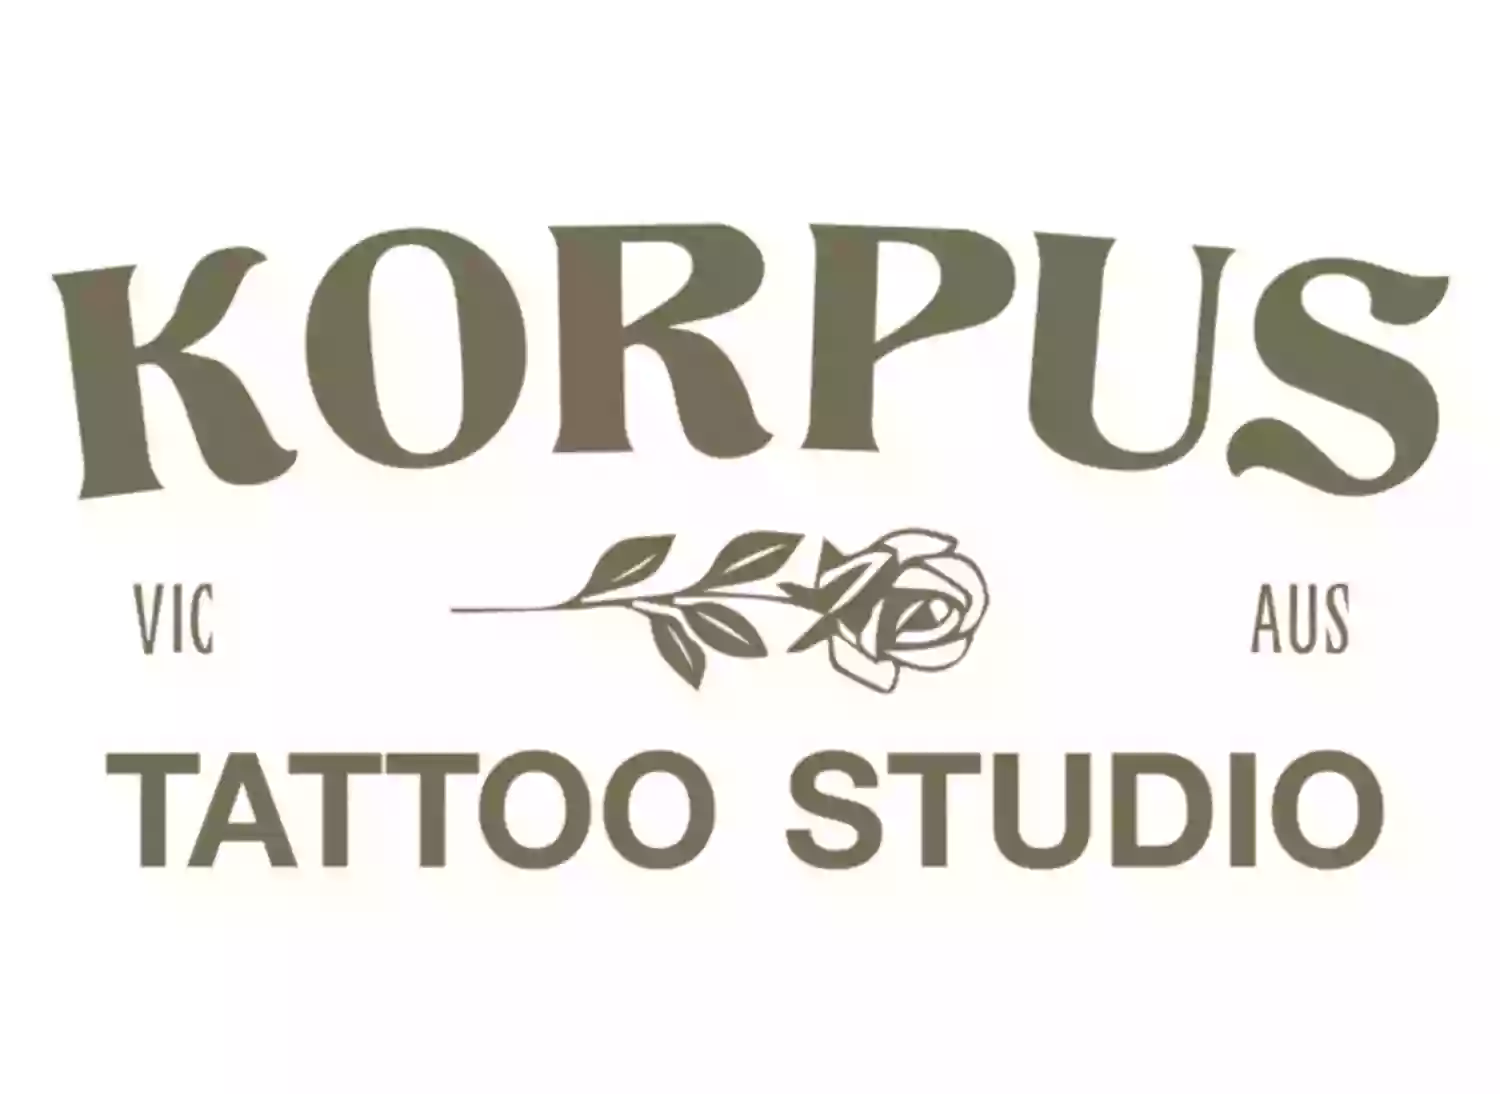 Korpus Tattoo Studio